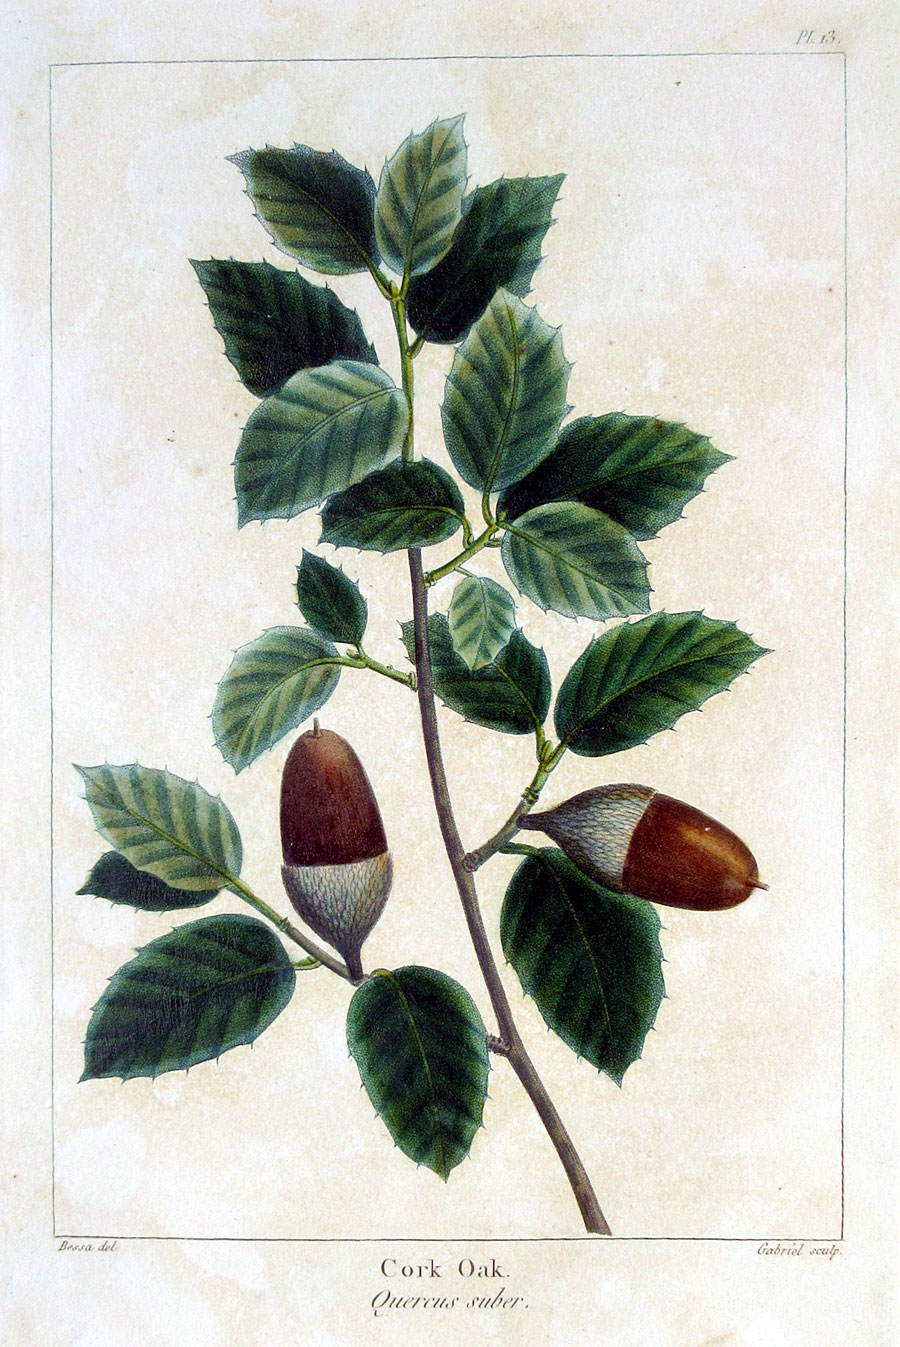 American Tree Leaves - 1857 - Michaux - Cork Oak